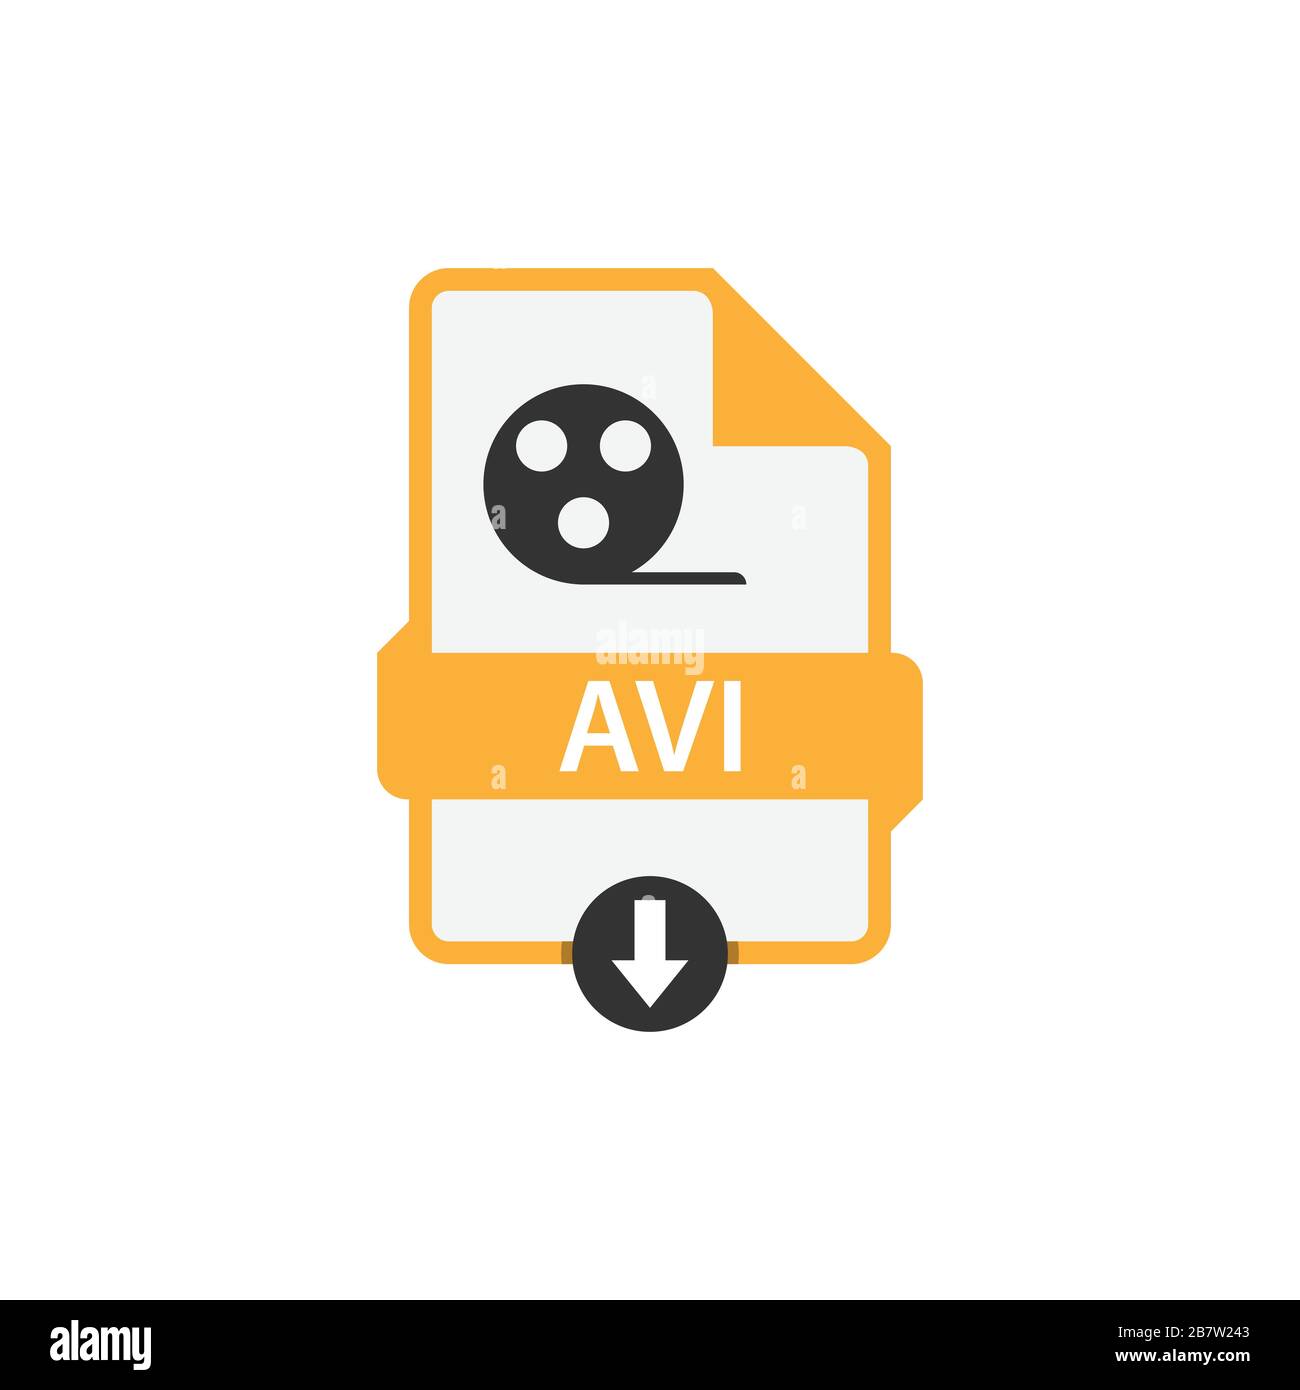 AVI scarica immagine vettoriale in formato file. Vettore grafico disegno piatto icona FILE AVI Illustrazione Vettoriale